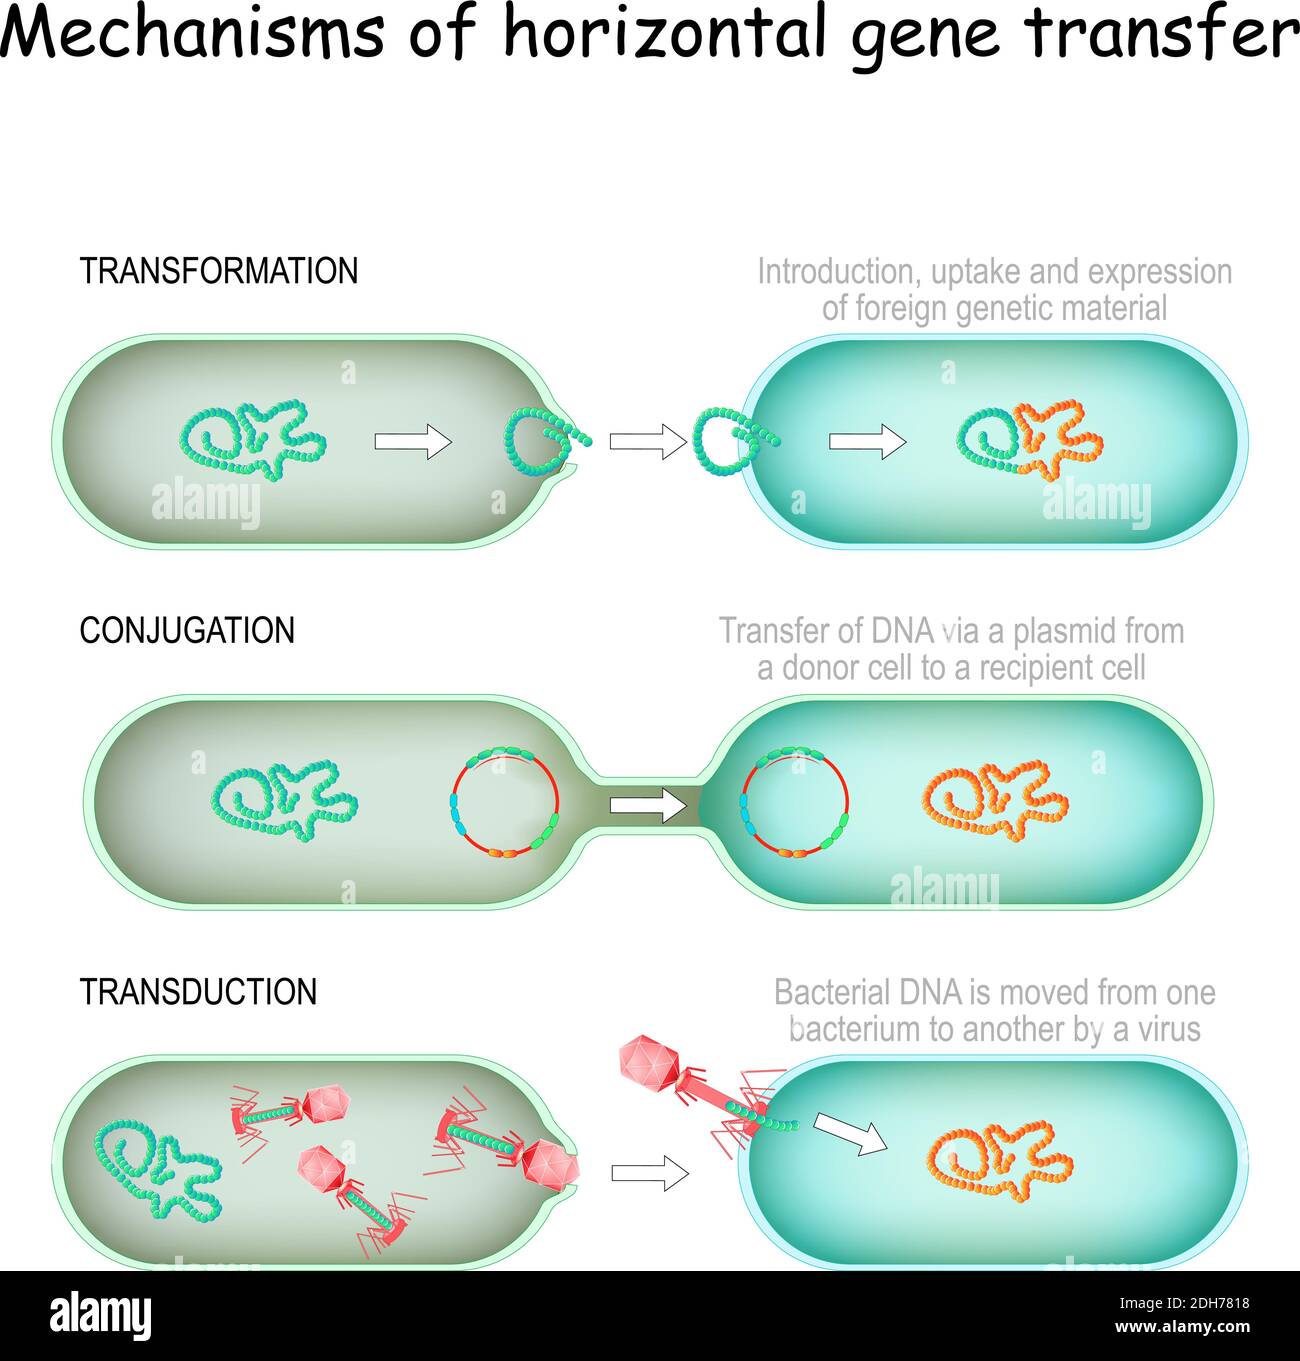 Mecanismos de transferencia horizontal de genes. conjugación (transferencia de ADN a través de un plásmido de una célula donante a un receptor), transducción (ADN bacteriano) Ilustración del Vector